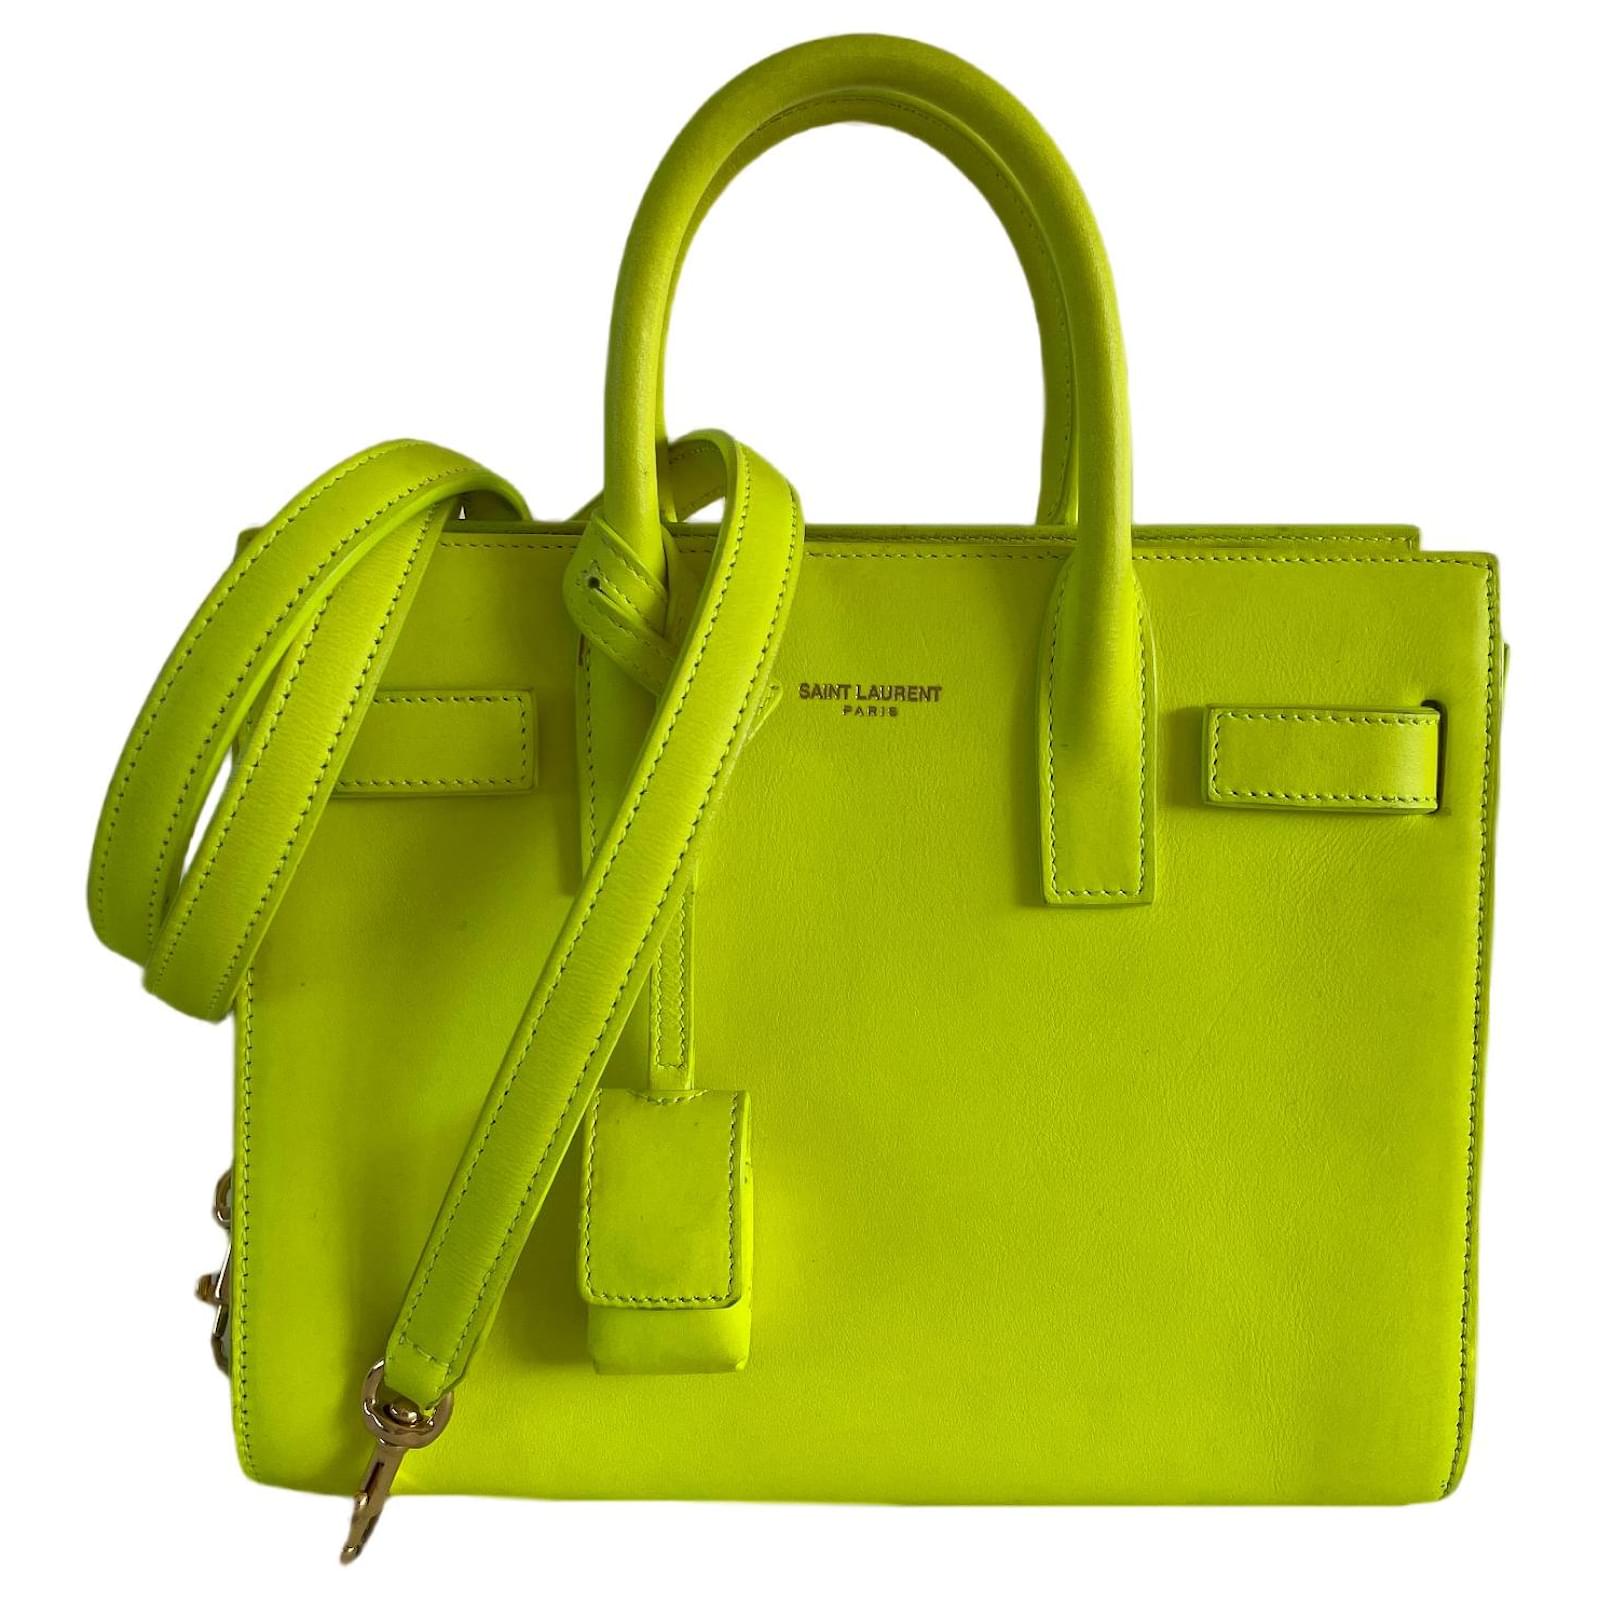 Saint Laurent Nano Sac De Jour Top Handle Bag in Green